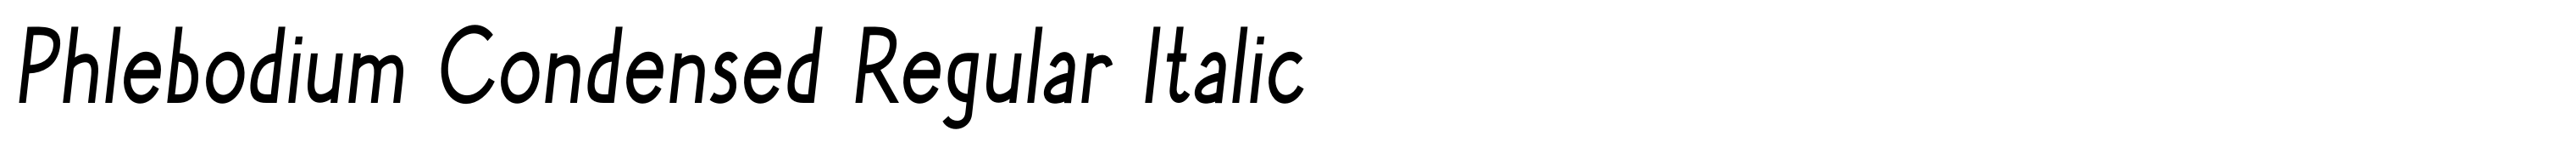 Phlebodium Condensed Regular Italic